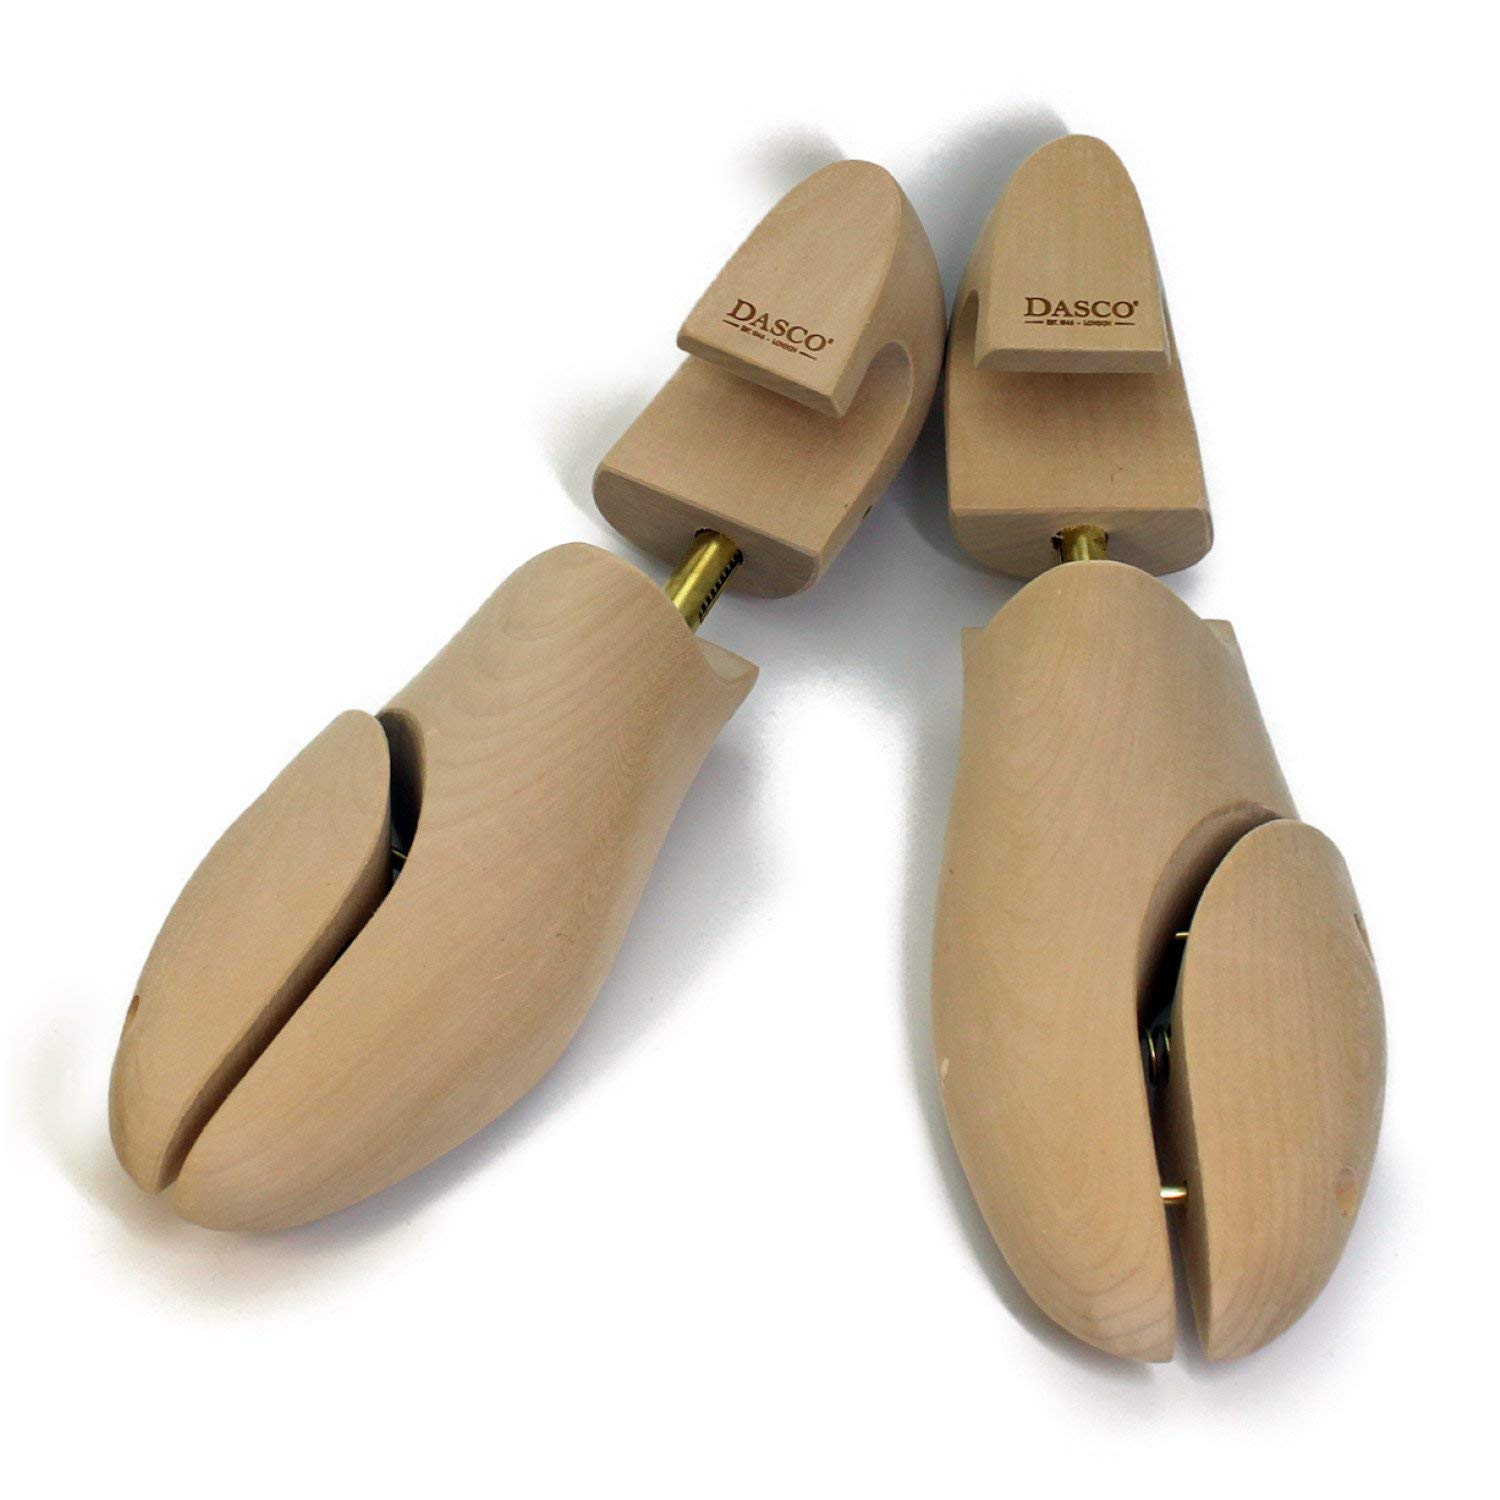 Формодержатели для обуви Dasco из бука, Англия